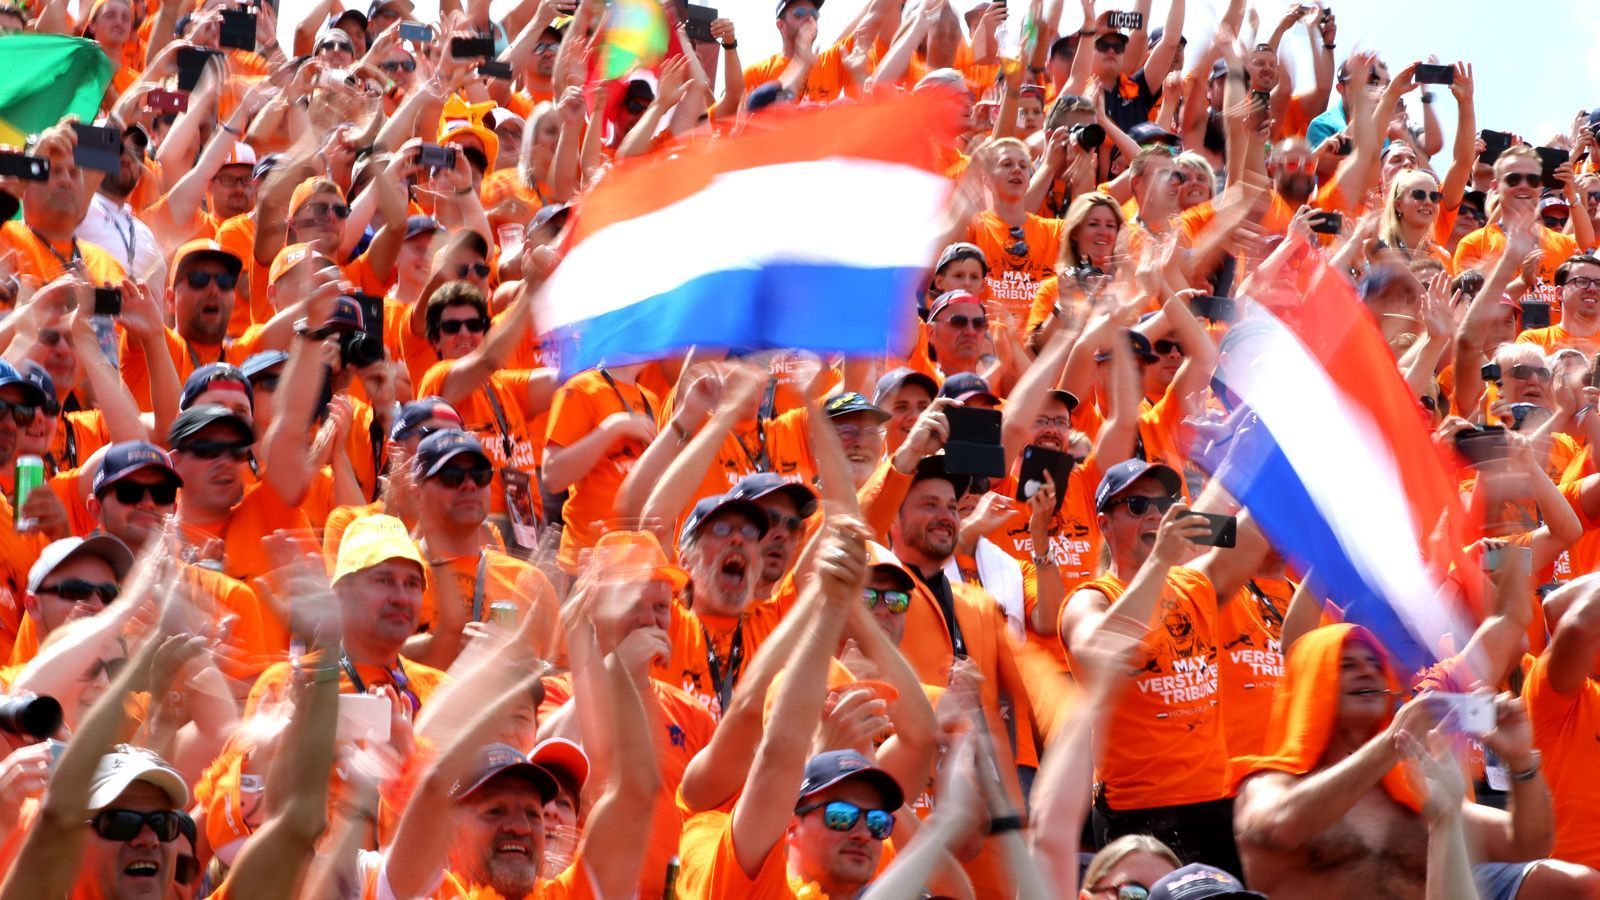 
                <strong>F1 ab 2020 in Zandvoort</strong><br>
                Die "Orange Army" hat Grund zu feiern - genauso wie Max Verstappen: 2020 darf sich der Red Bull-Star auf ein Heimspiel vor ausverkauftem Haus freuen. Schon über eine Million Ticketanfragen haben die Veranstalter in den Niederlanden für das Rennen in Zandvoort erhalten - für rund 105.000 Karten pro Tag. Nun soll das Los entscheiden, welche F1-Fans live dabei sein dürfen. Vorab wird die Strecke aber noch den Ansprüchen der Königsklasse angepasst, der Umbau startet im November 2019 und soll im März 2020 abgeschlossen sein. Gute Nachrichten für alle Motorsportfans, die die Tradition lieben: Die Kiesbetten bleiben erhalten. Außerdem versuchen die Veranstalter, für die Fans doch noch mehr Platz zu schaffen.
              